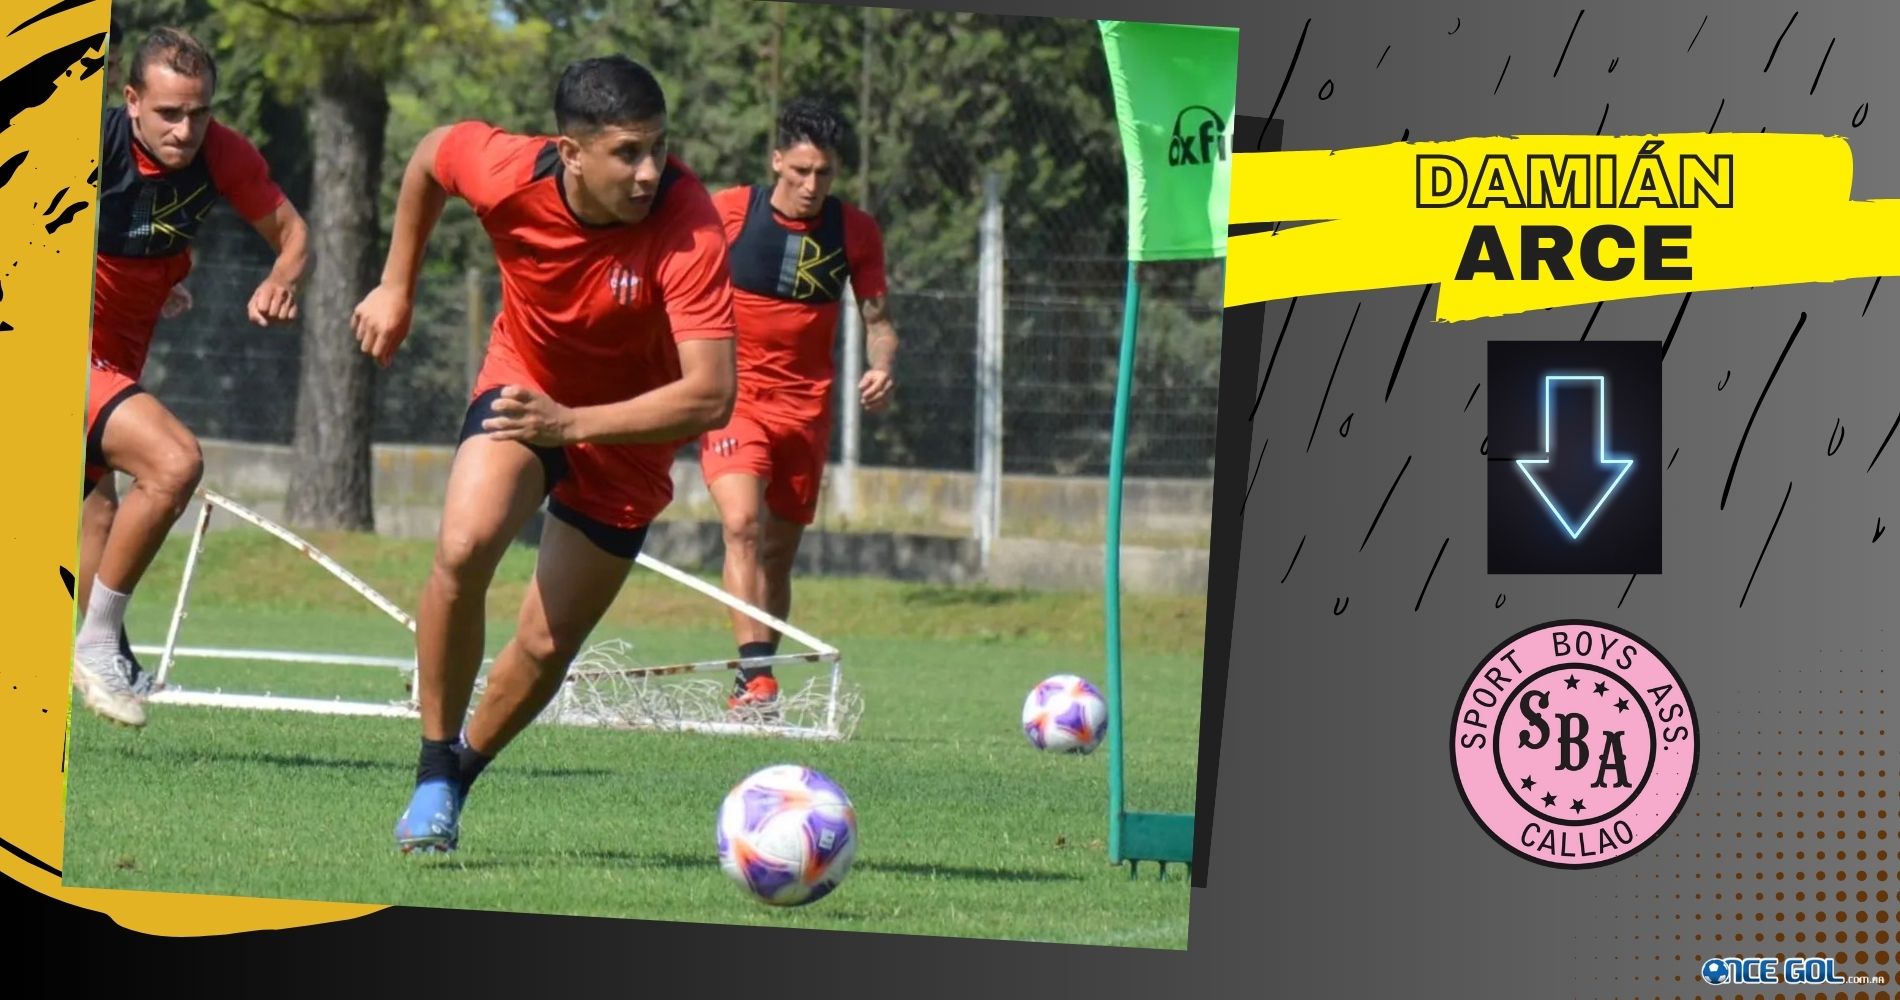 Damián Arce ex Patronato (2016/17 y 2023) arregló su incorporación a Sport Boys Callao de Perú